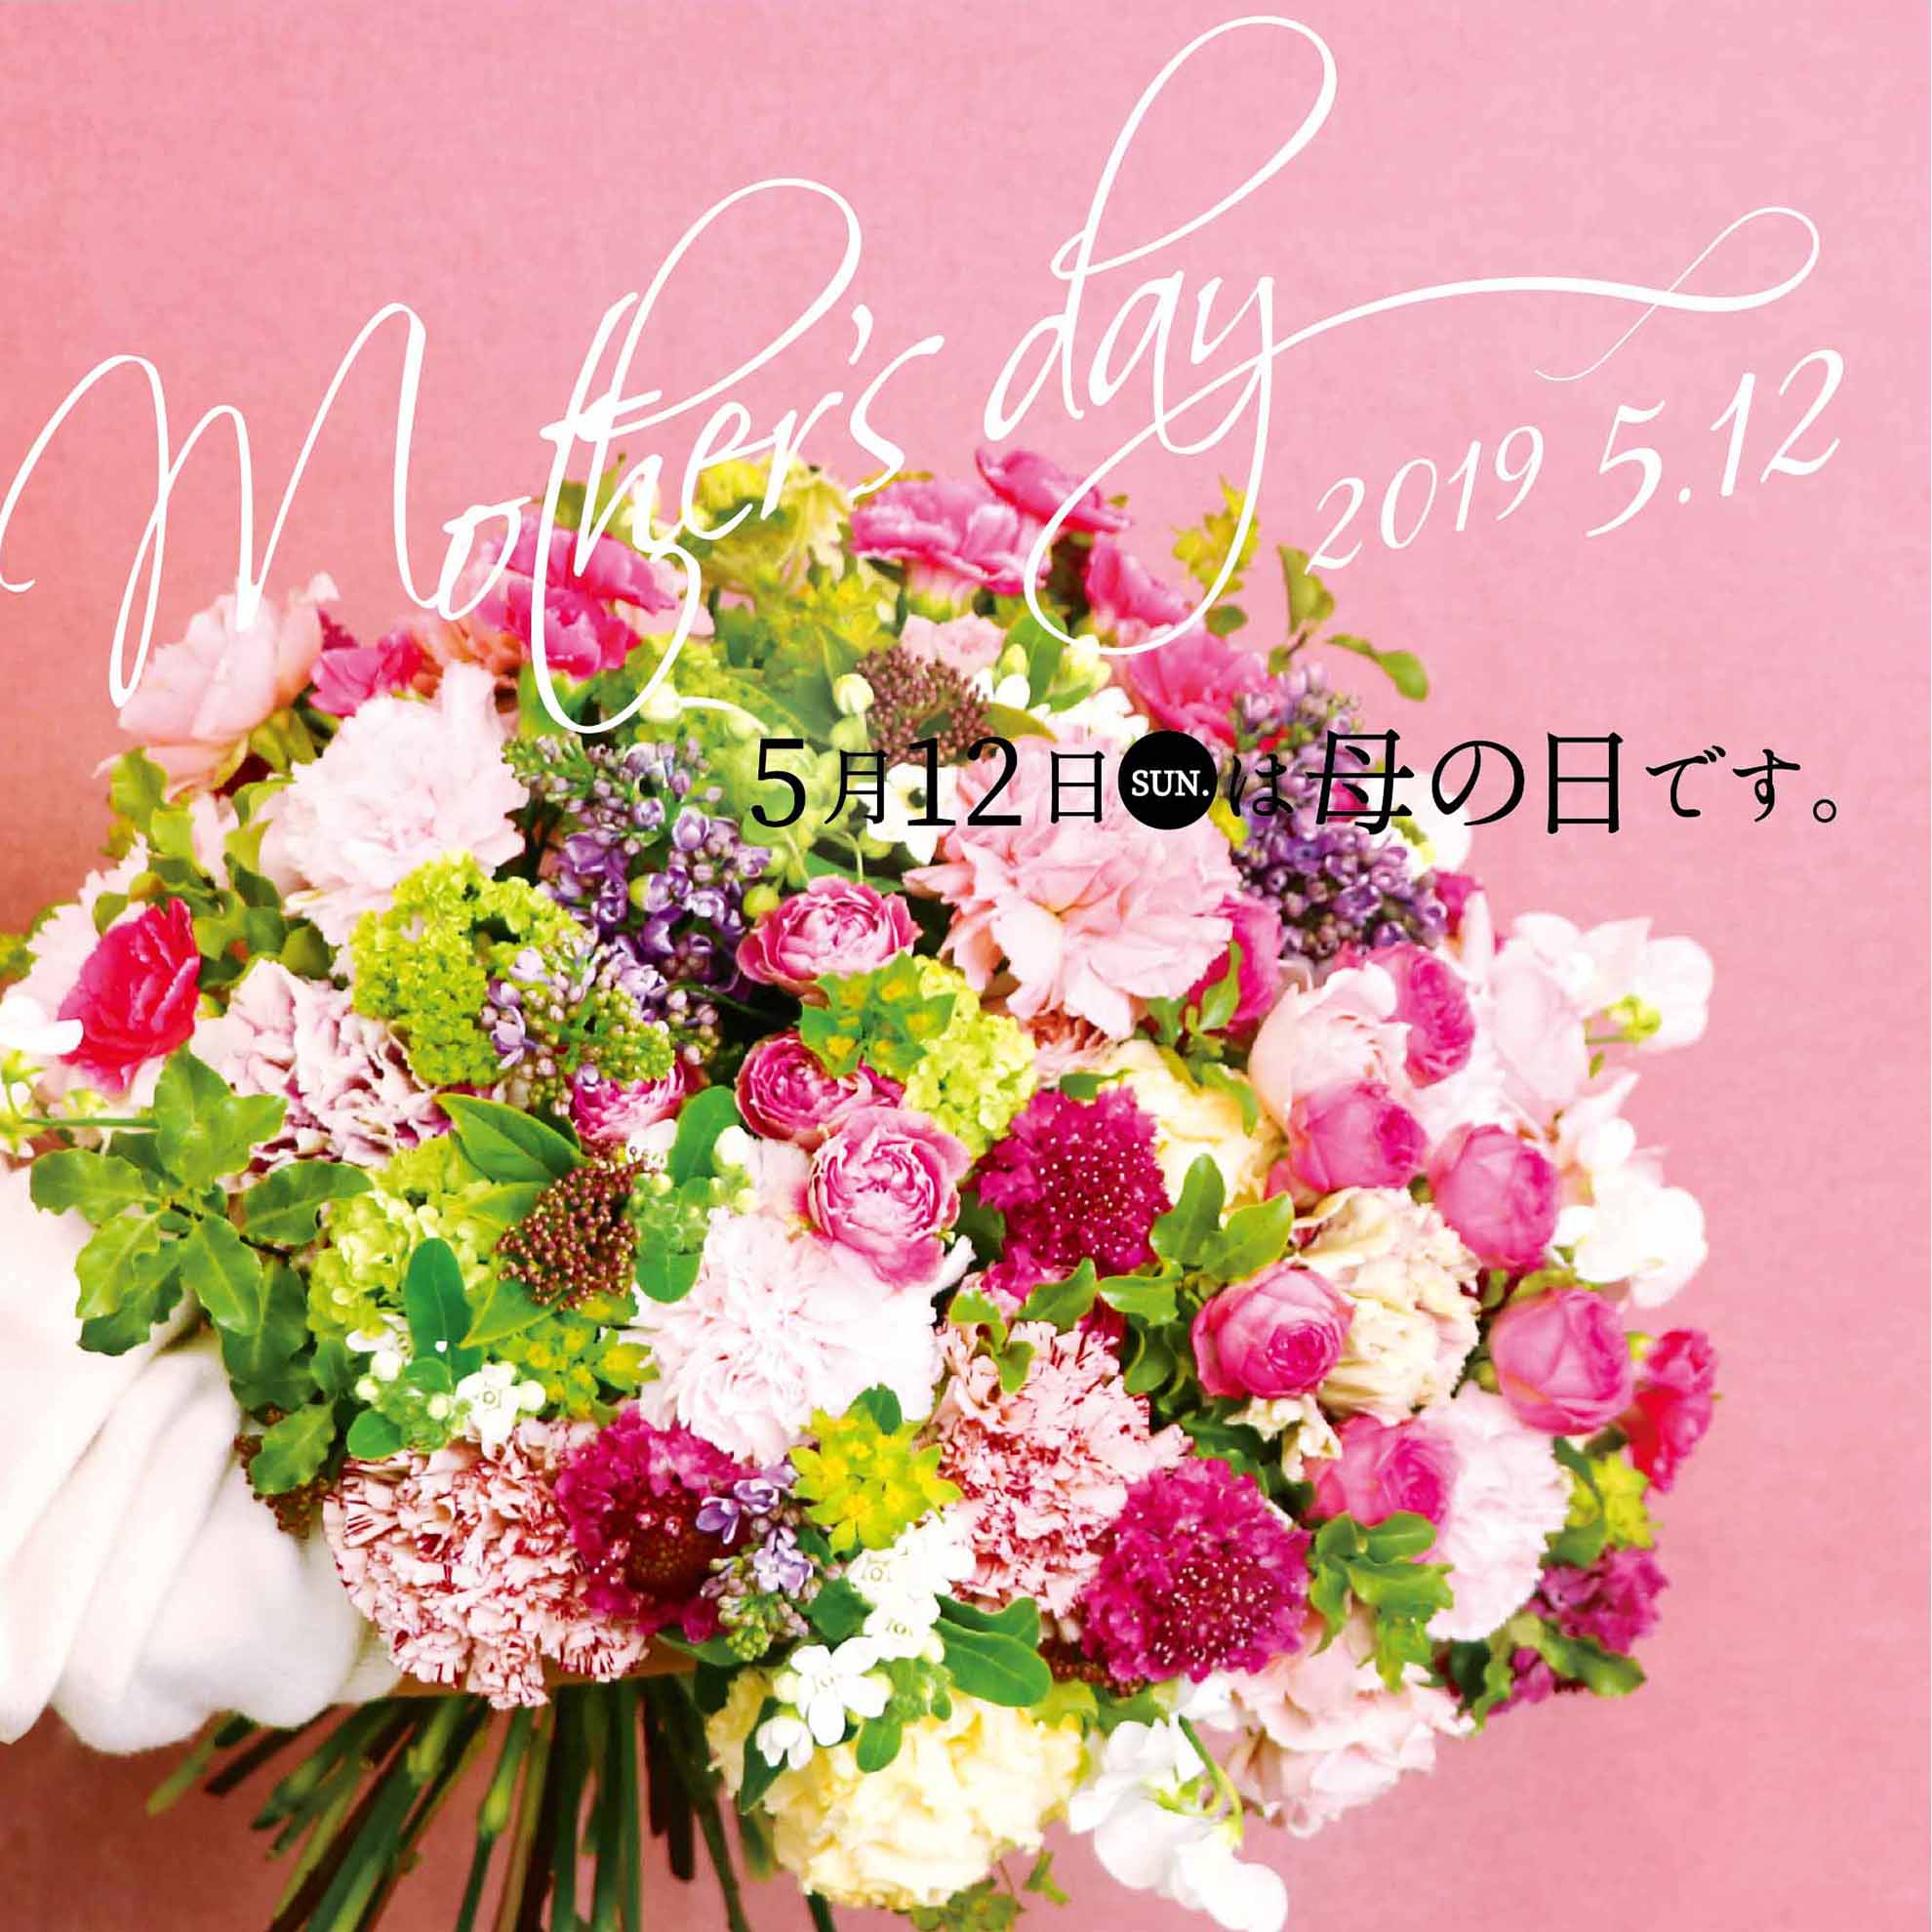 5 12 Sun 母の日に ありがとう の花を 第一園芸株式会社